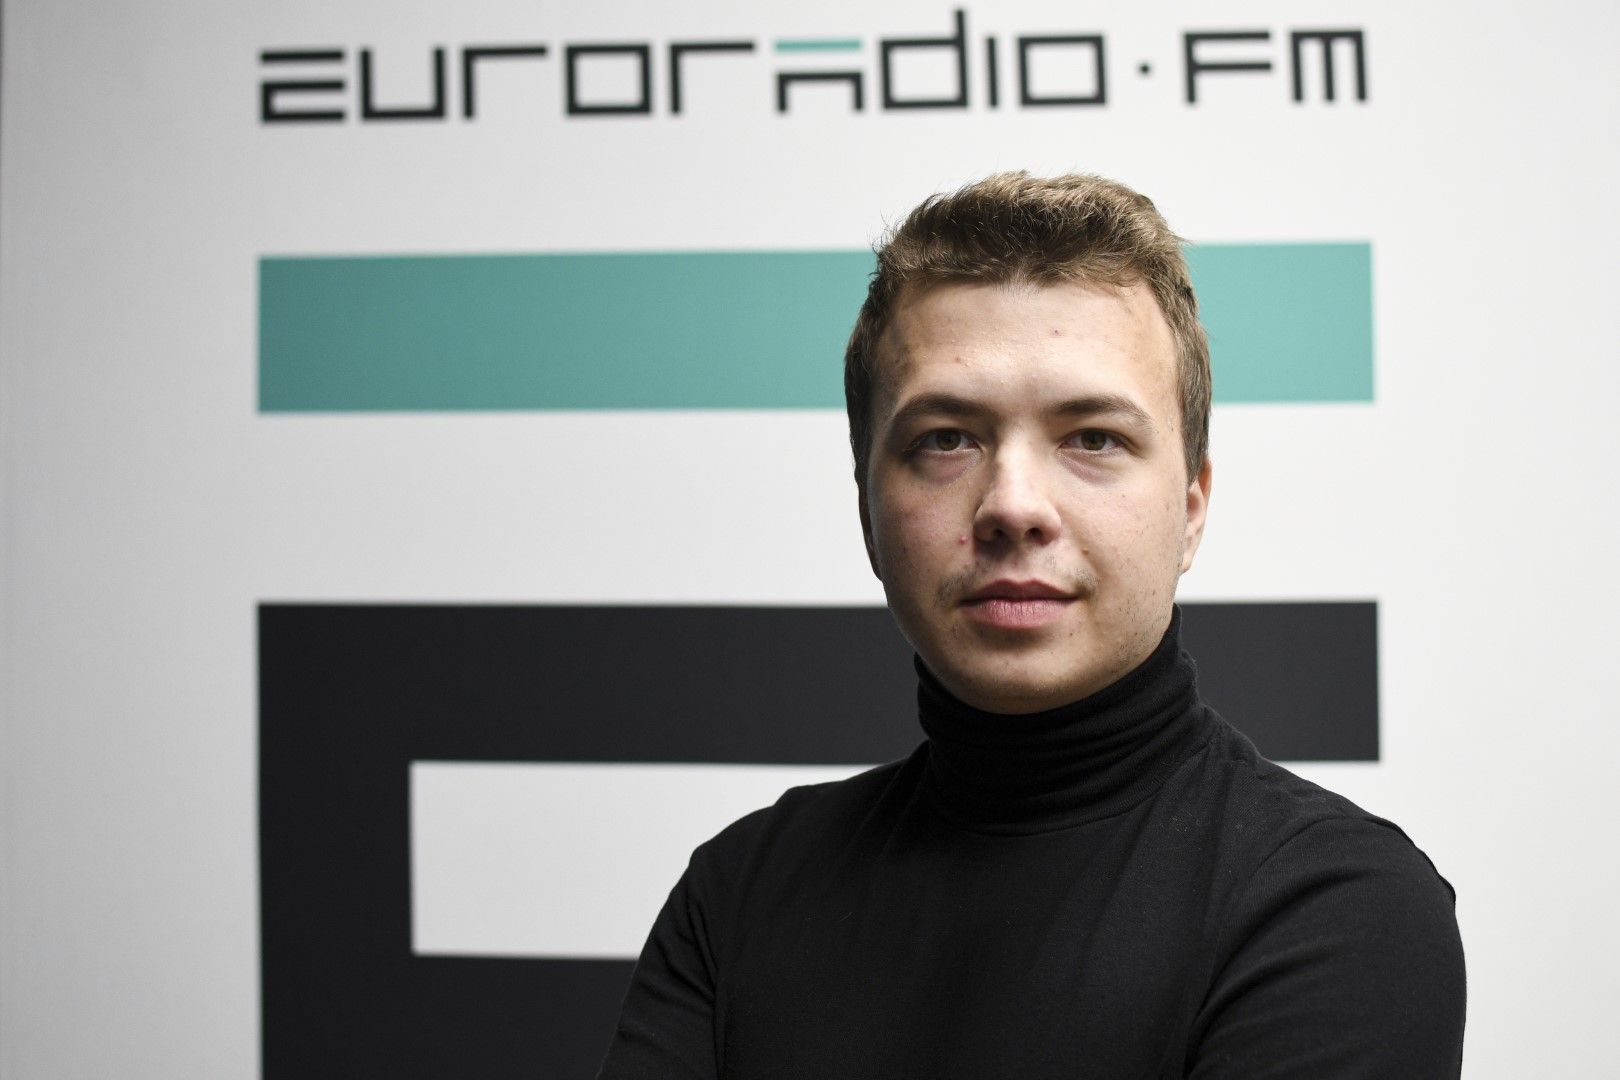 Снимка, публикувана от Европейското радио за Беларус, журналистът Роман Протасевич позира за снимка пред знака euroradio.fm в Минск, 17 ноември 2019 г. 